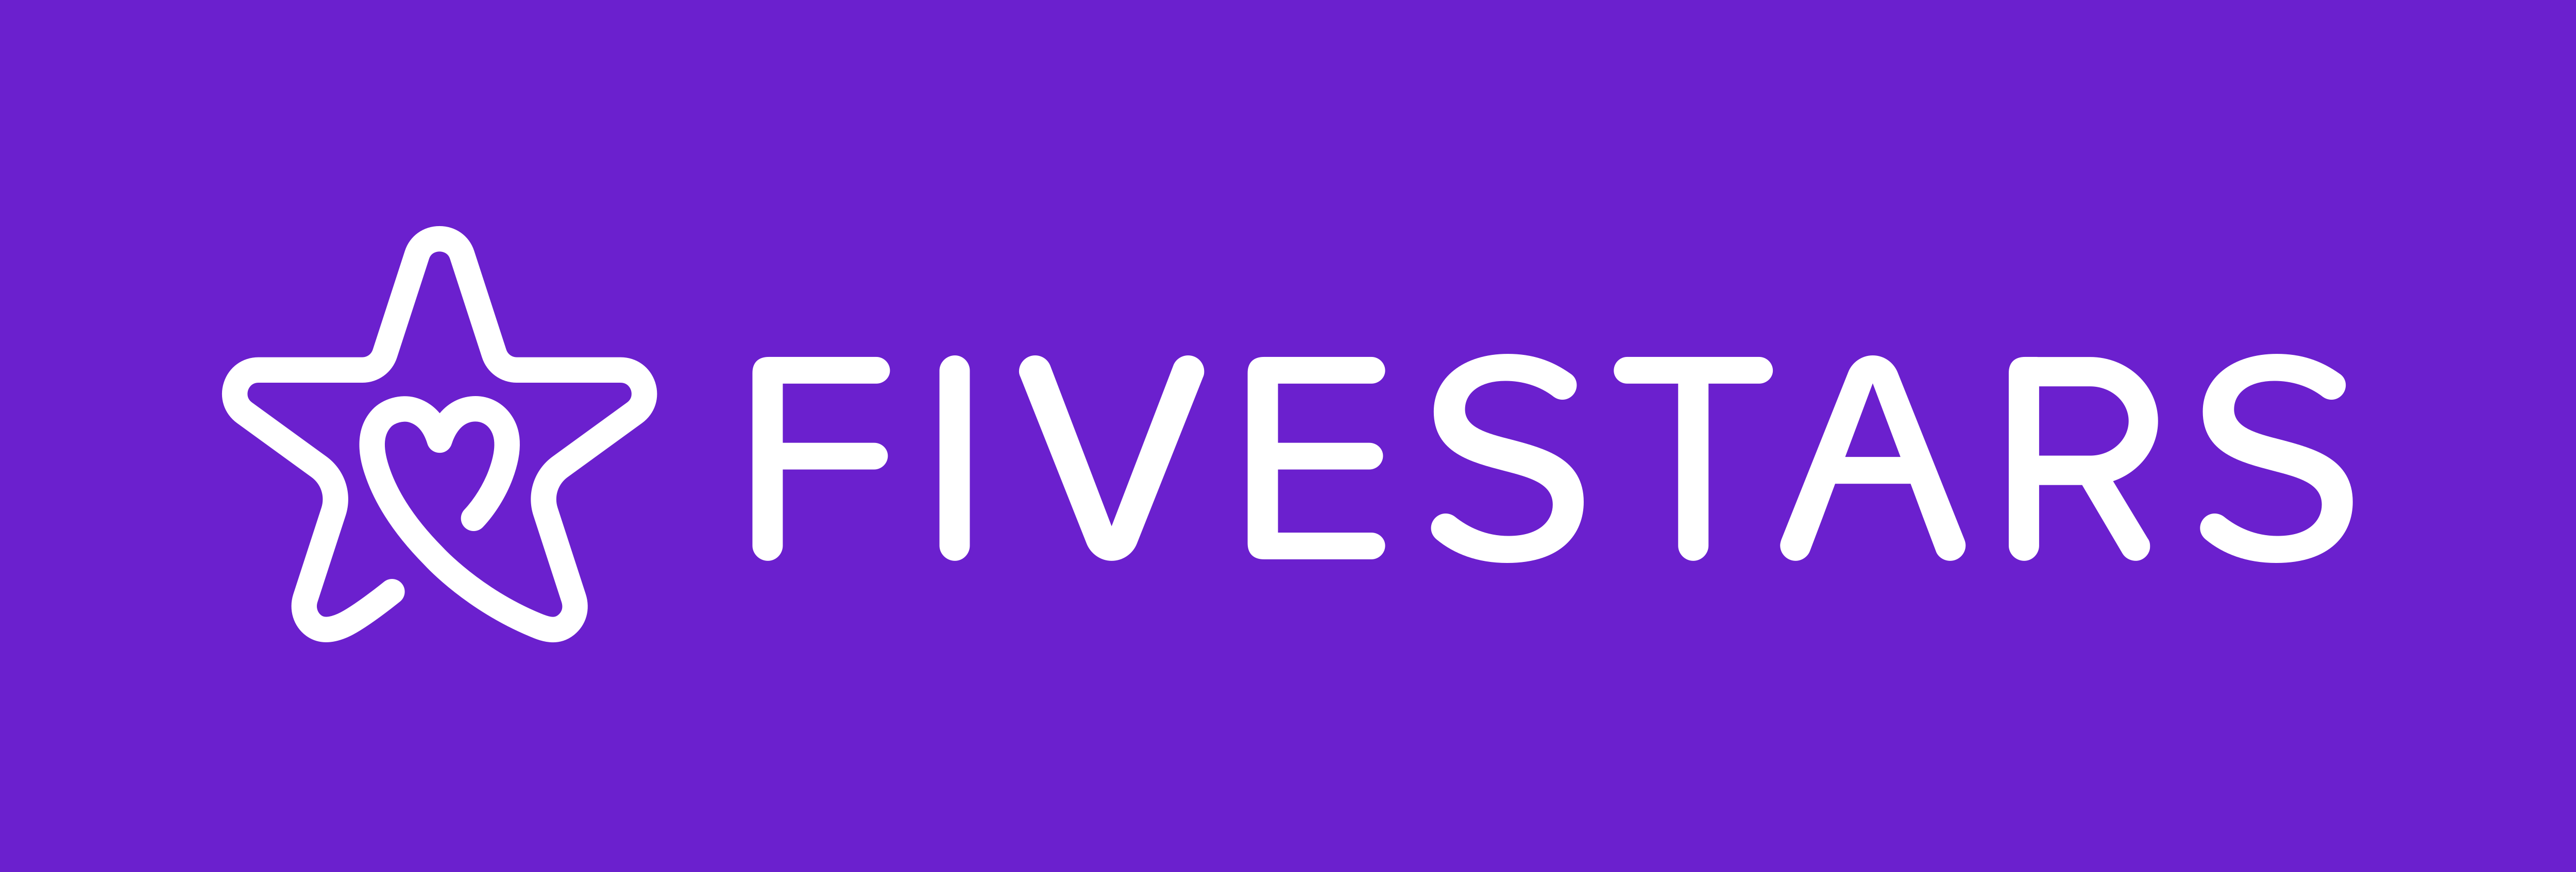 Fivestars – Logos Download